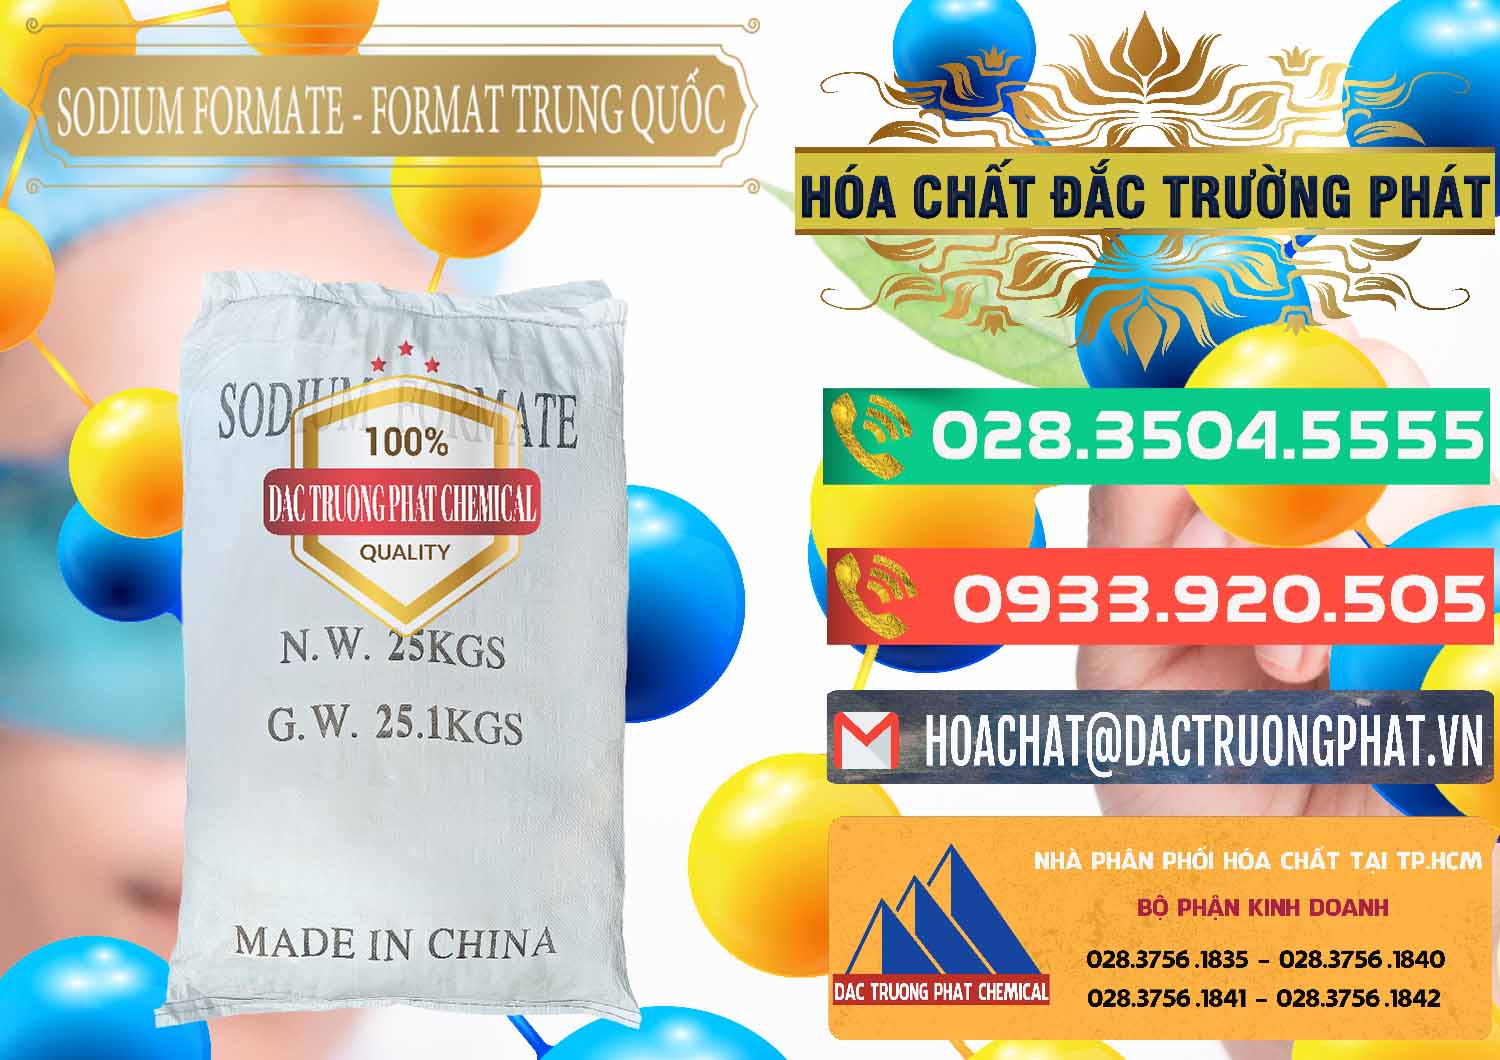 Công ty cung ứng và bán Sodium Formate - Natri Format Trung Quốc China - 0142 - Cty chuyên phân phối & nhập khẩu hóa chất tại TP.HCM - congtyhoachat.com.vn